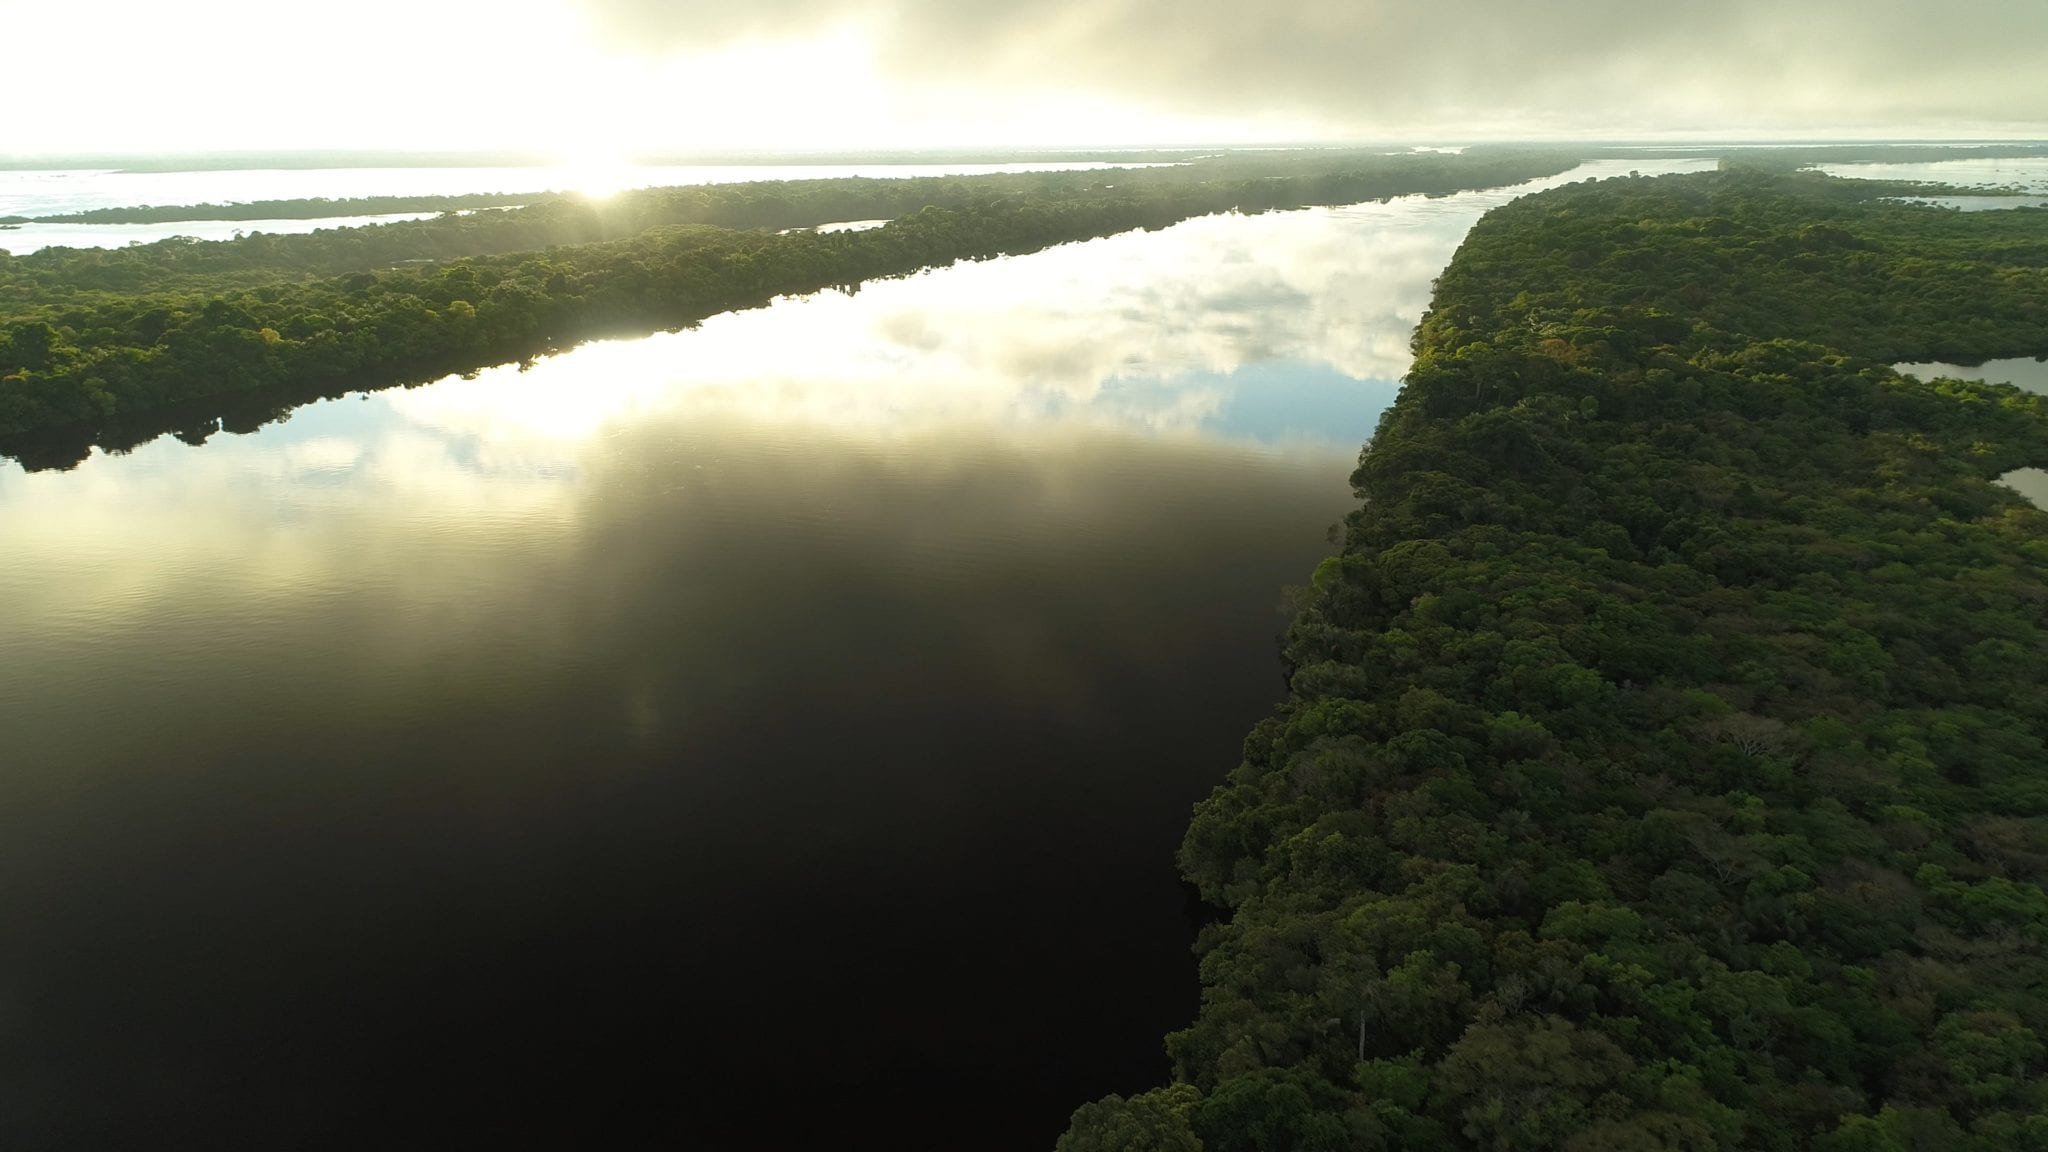 Амазонка какое устье. Устье реки Амазонка. Бразилия Амазонская низменность. Исток реки Амазонка. Эстуарий реки Амазонка.